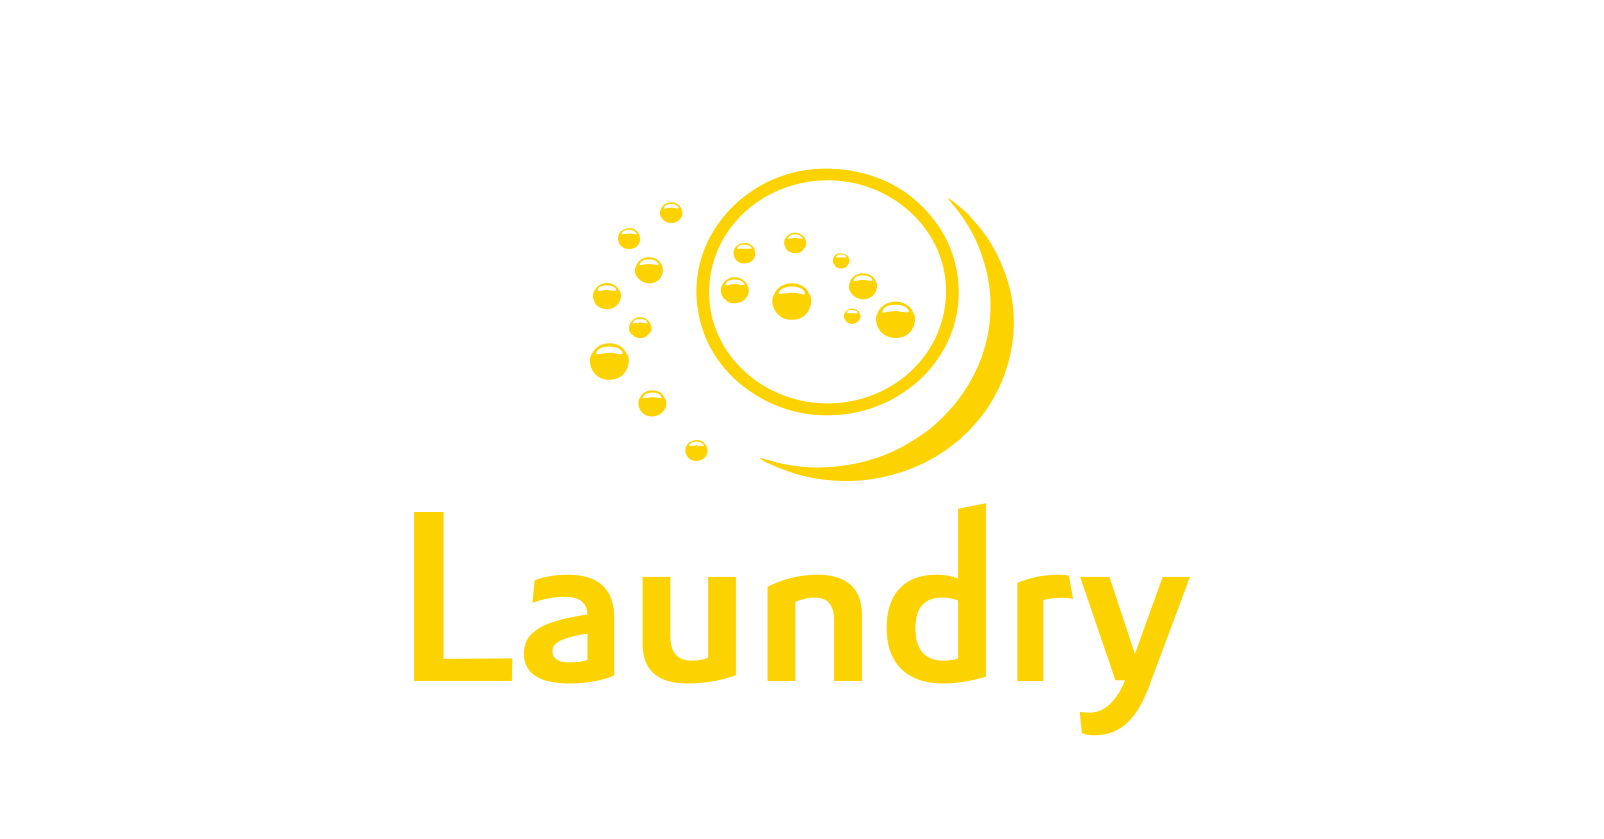 5 Boro Laundry